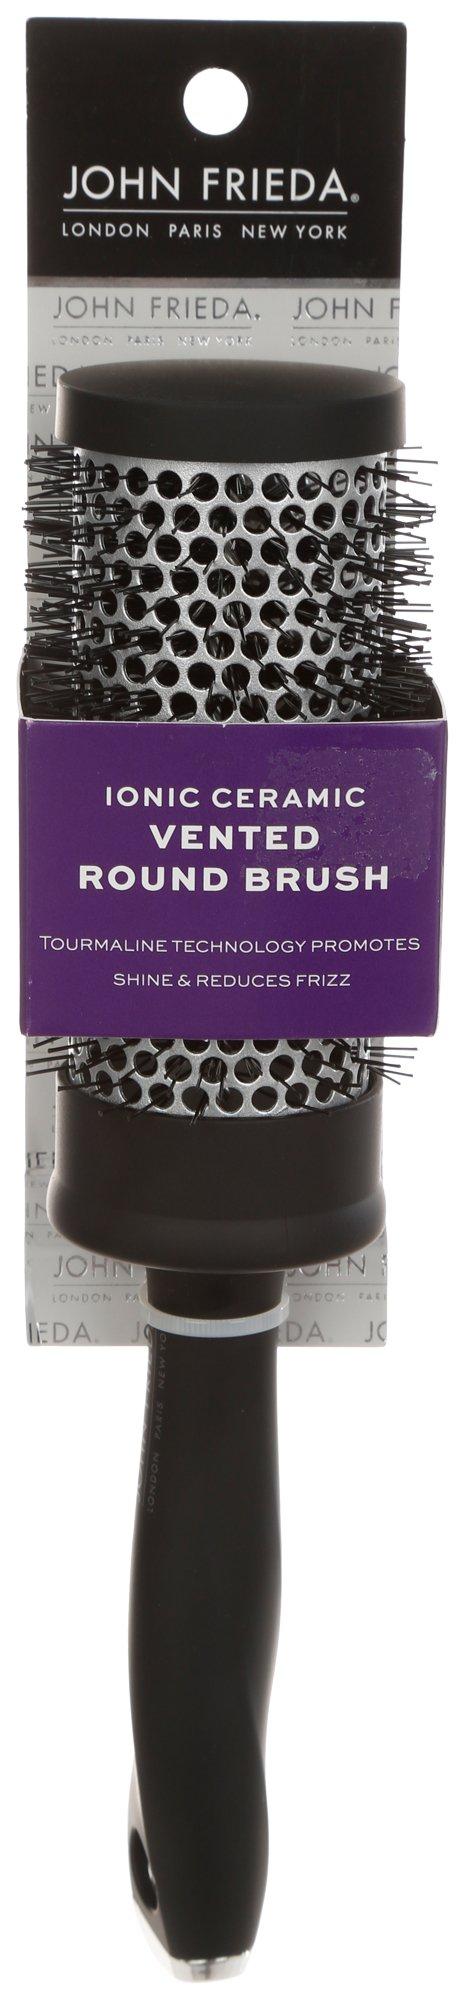 Ionic Ceramic Vented Round Brush